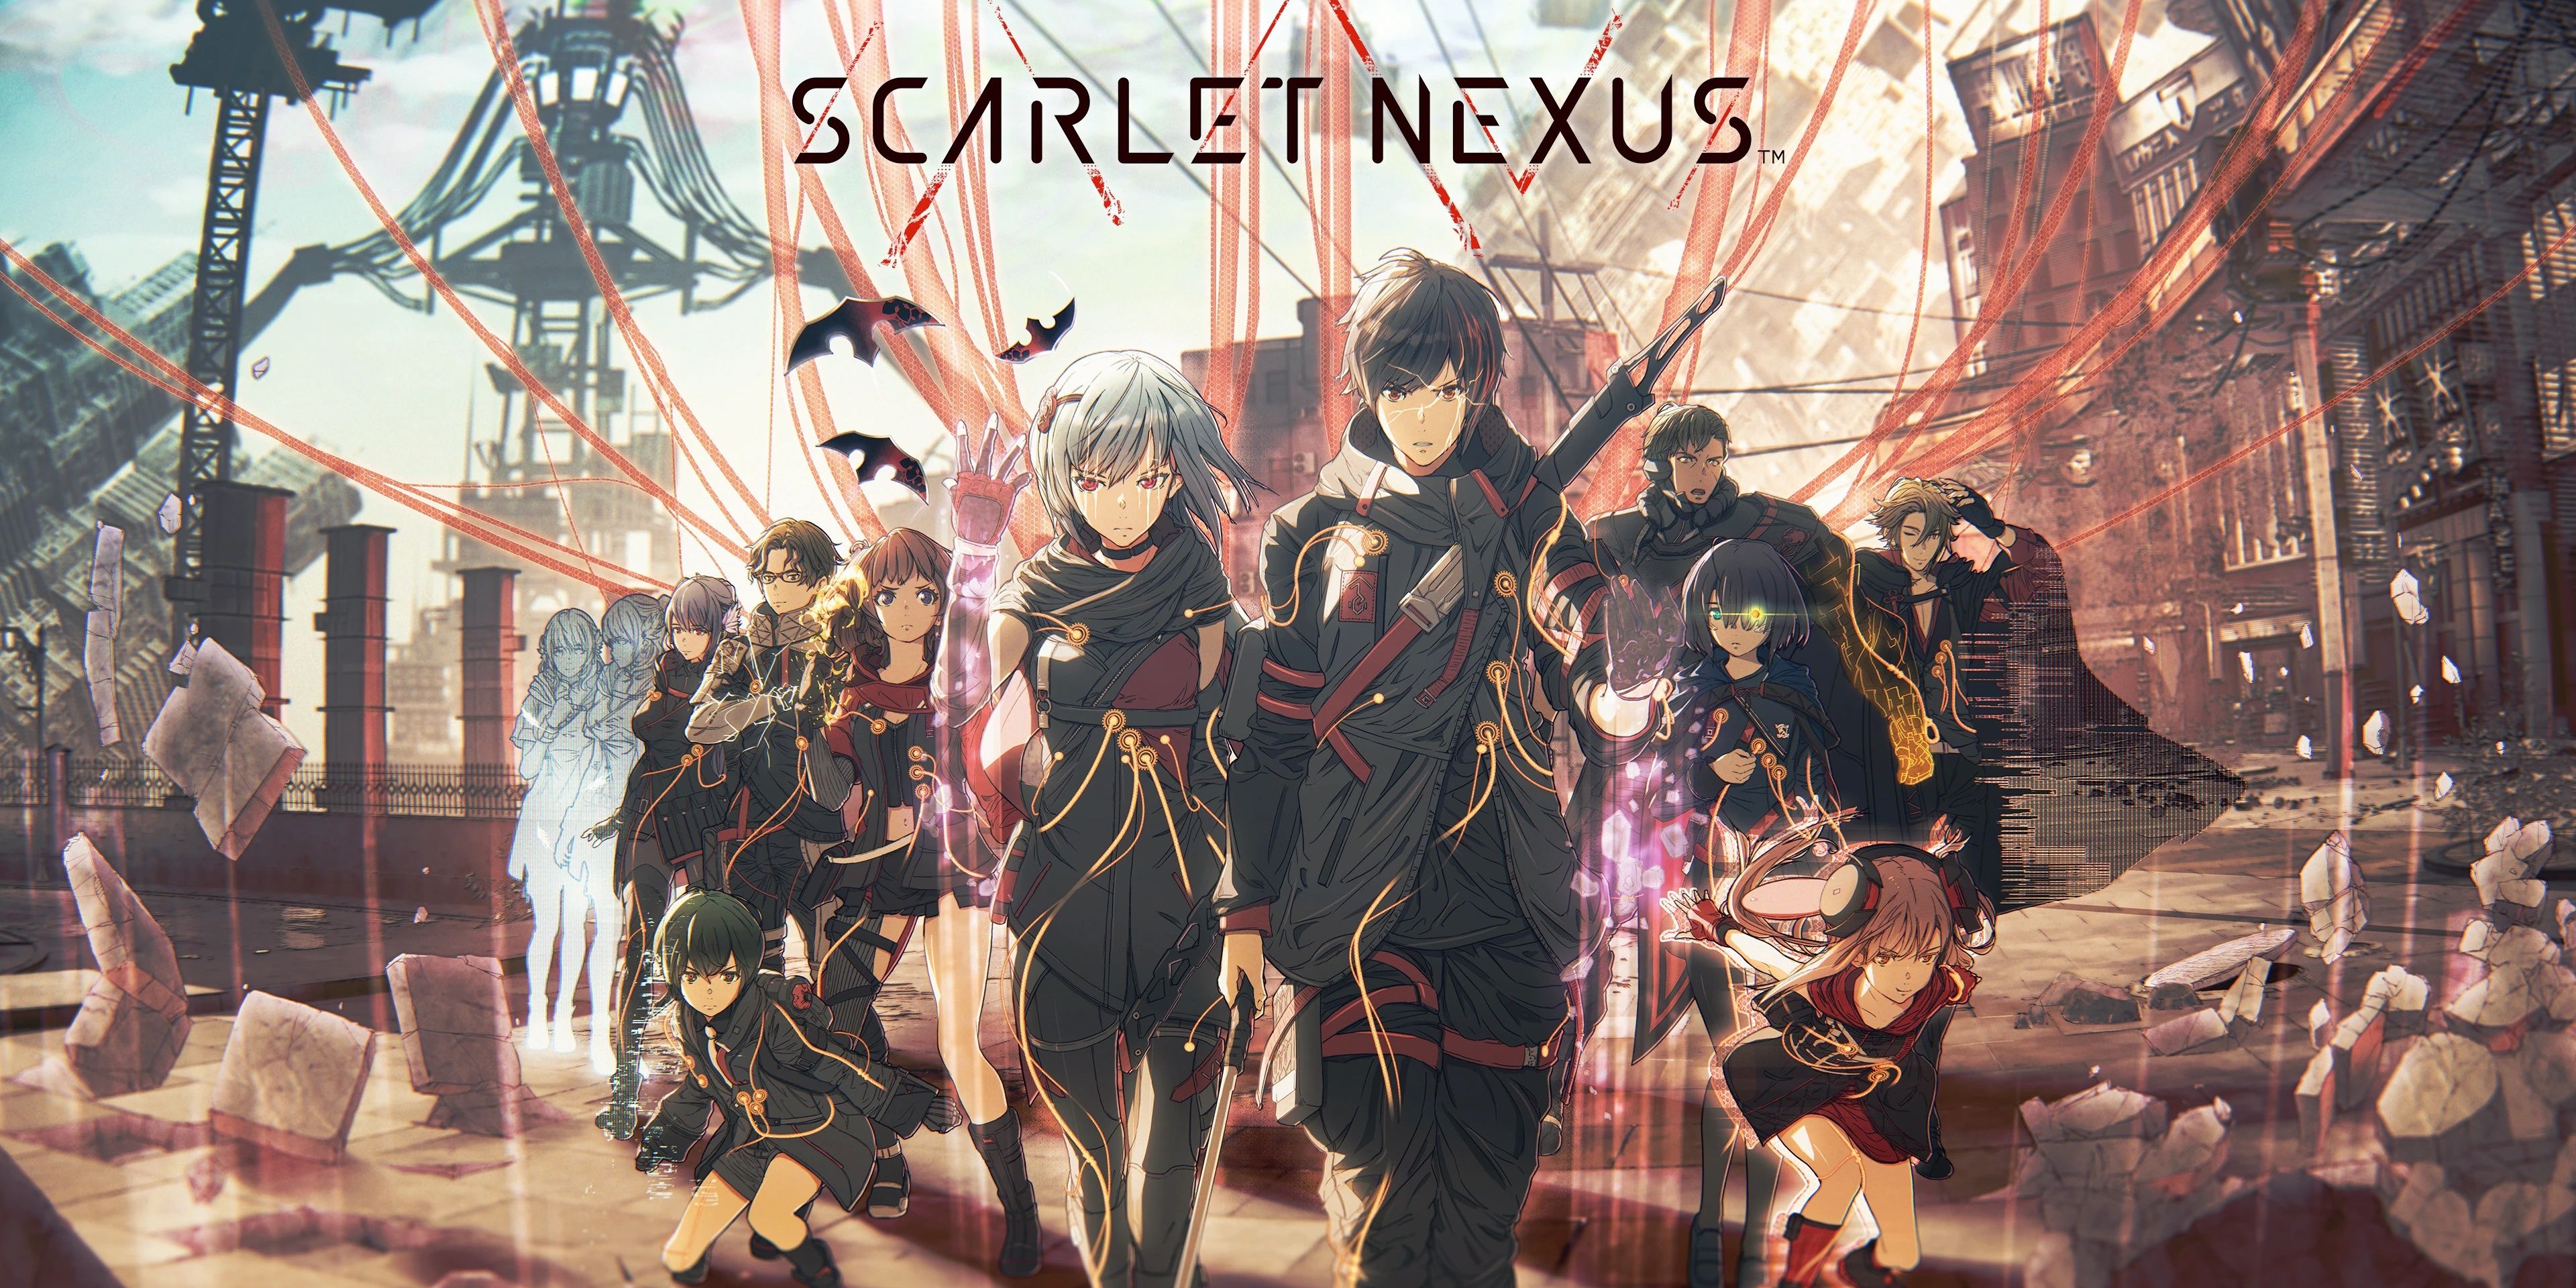 Scarlett Nexus Anime Character 1 by ByanEl on DeviantArt